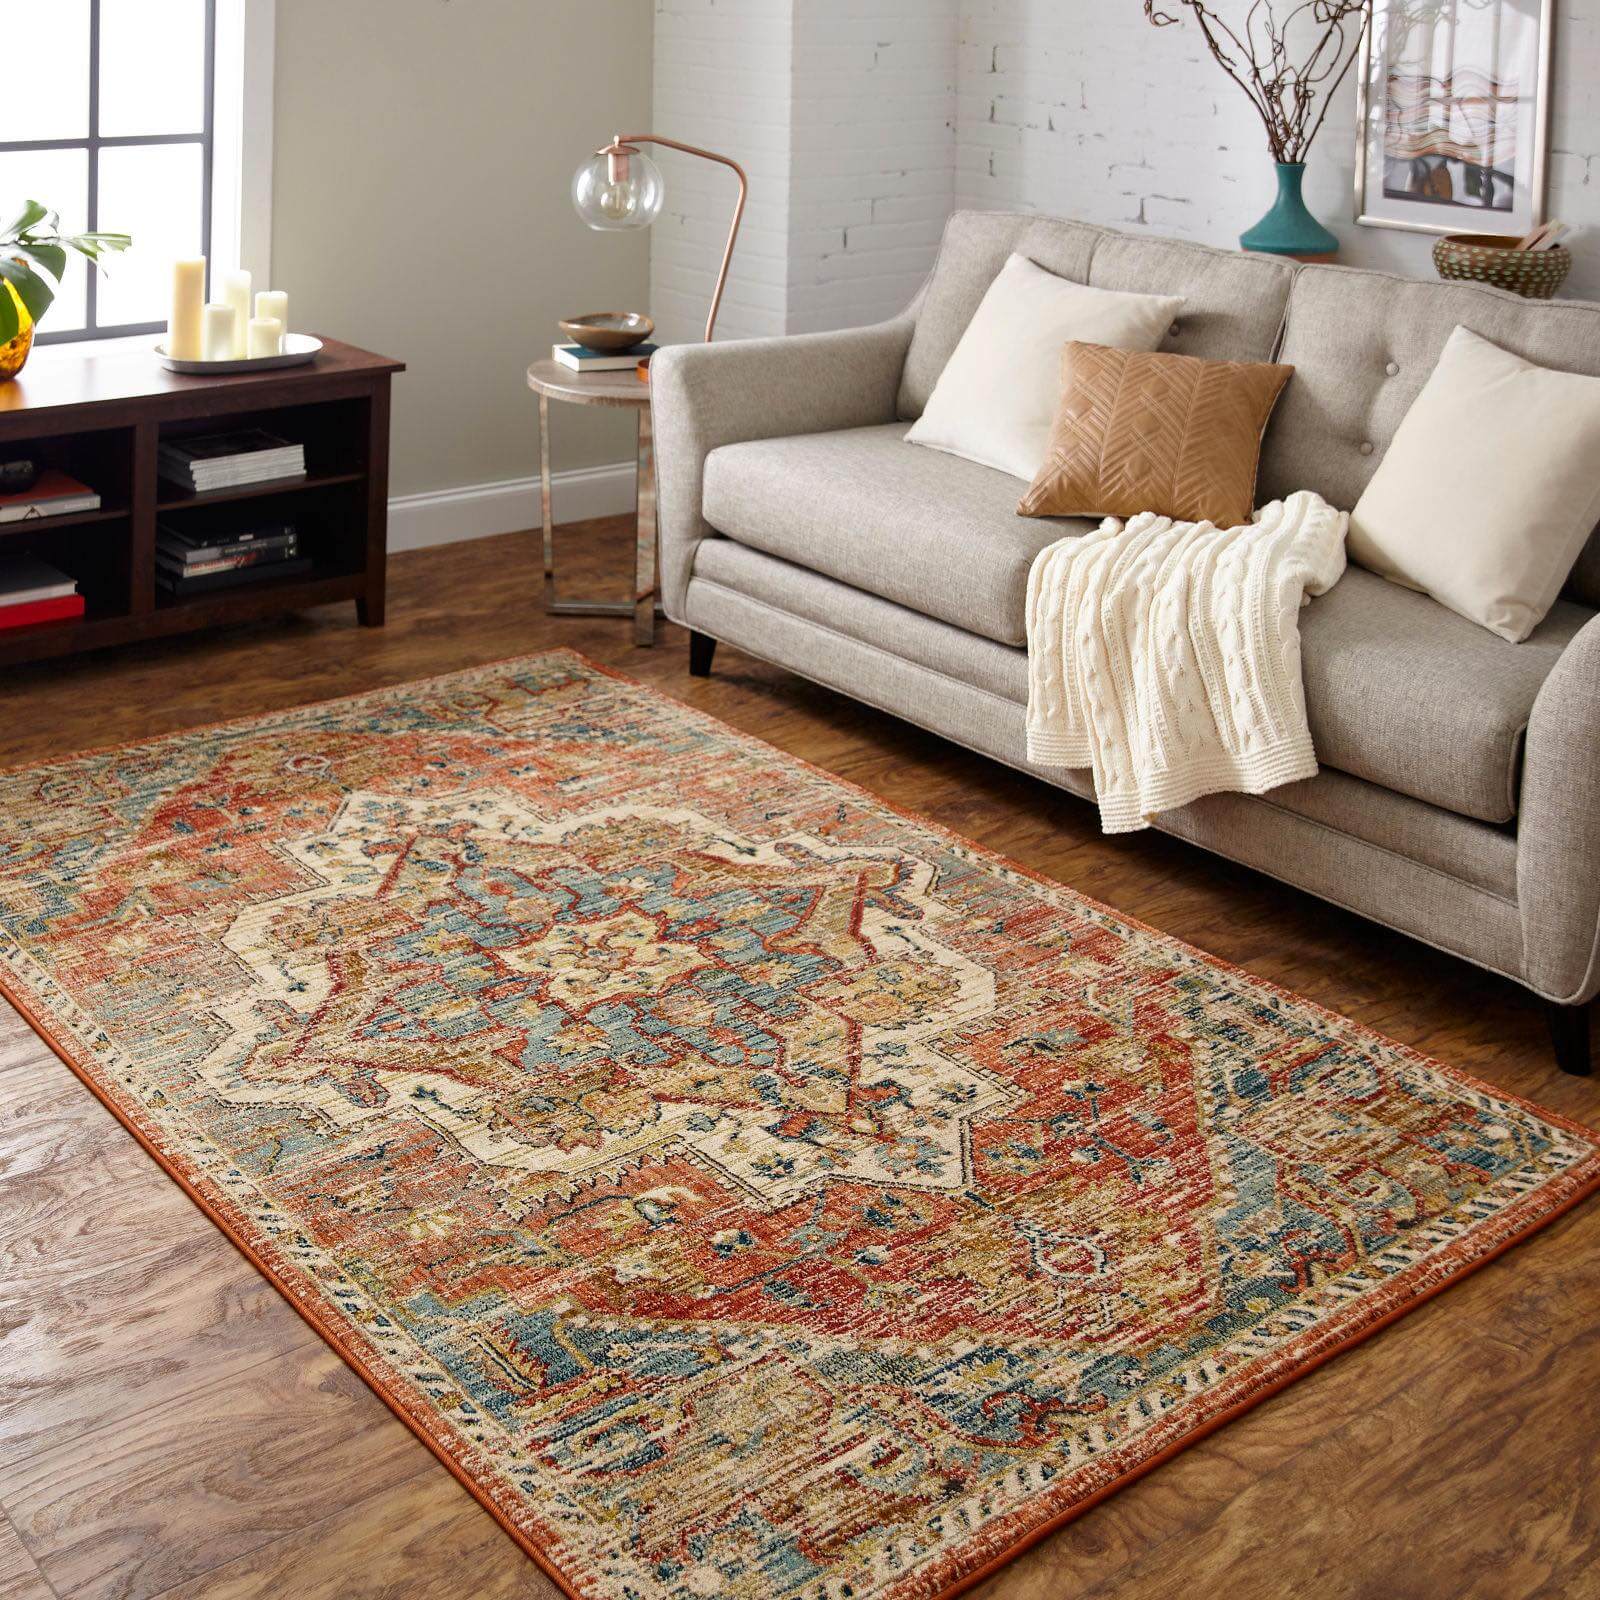 Area rug | Towne Flooring Center